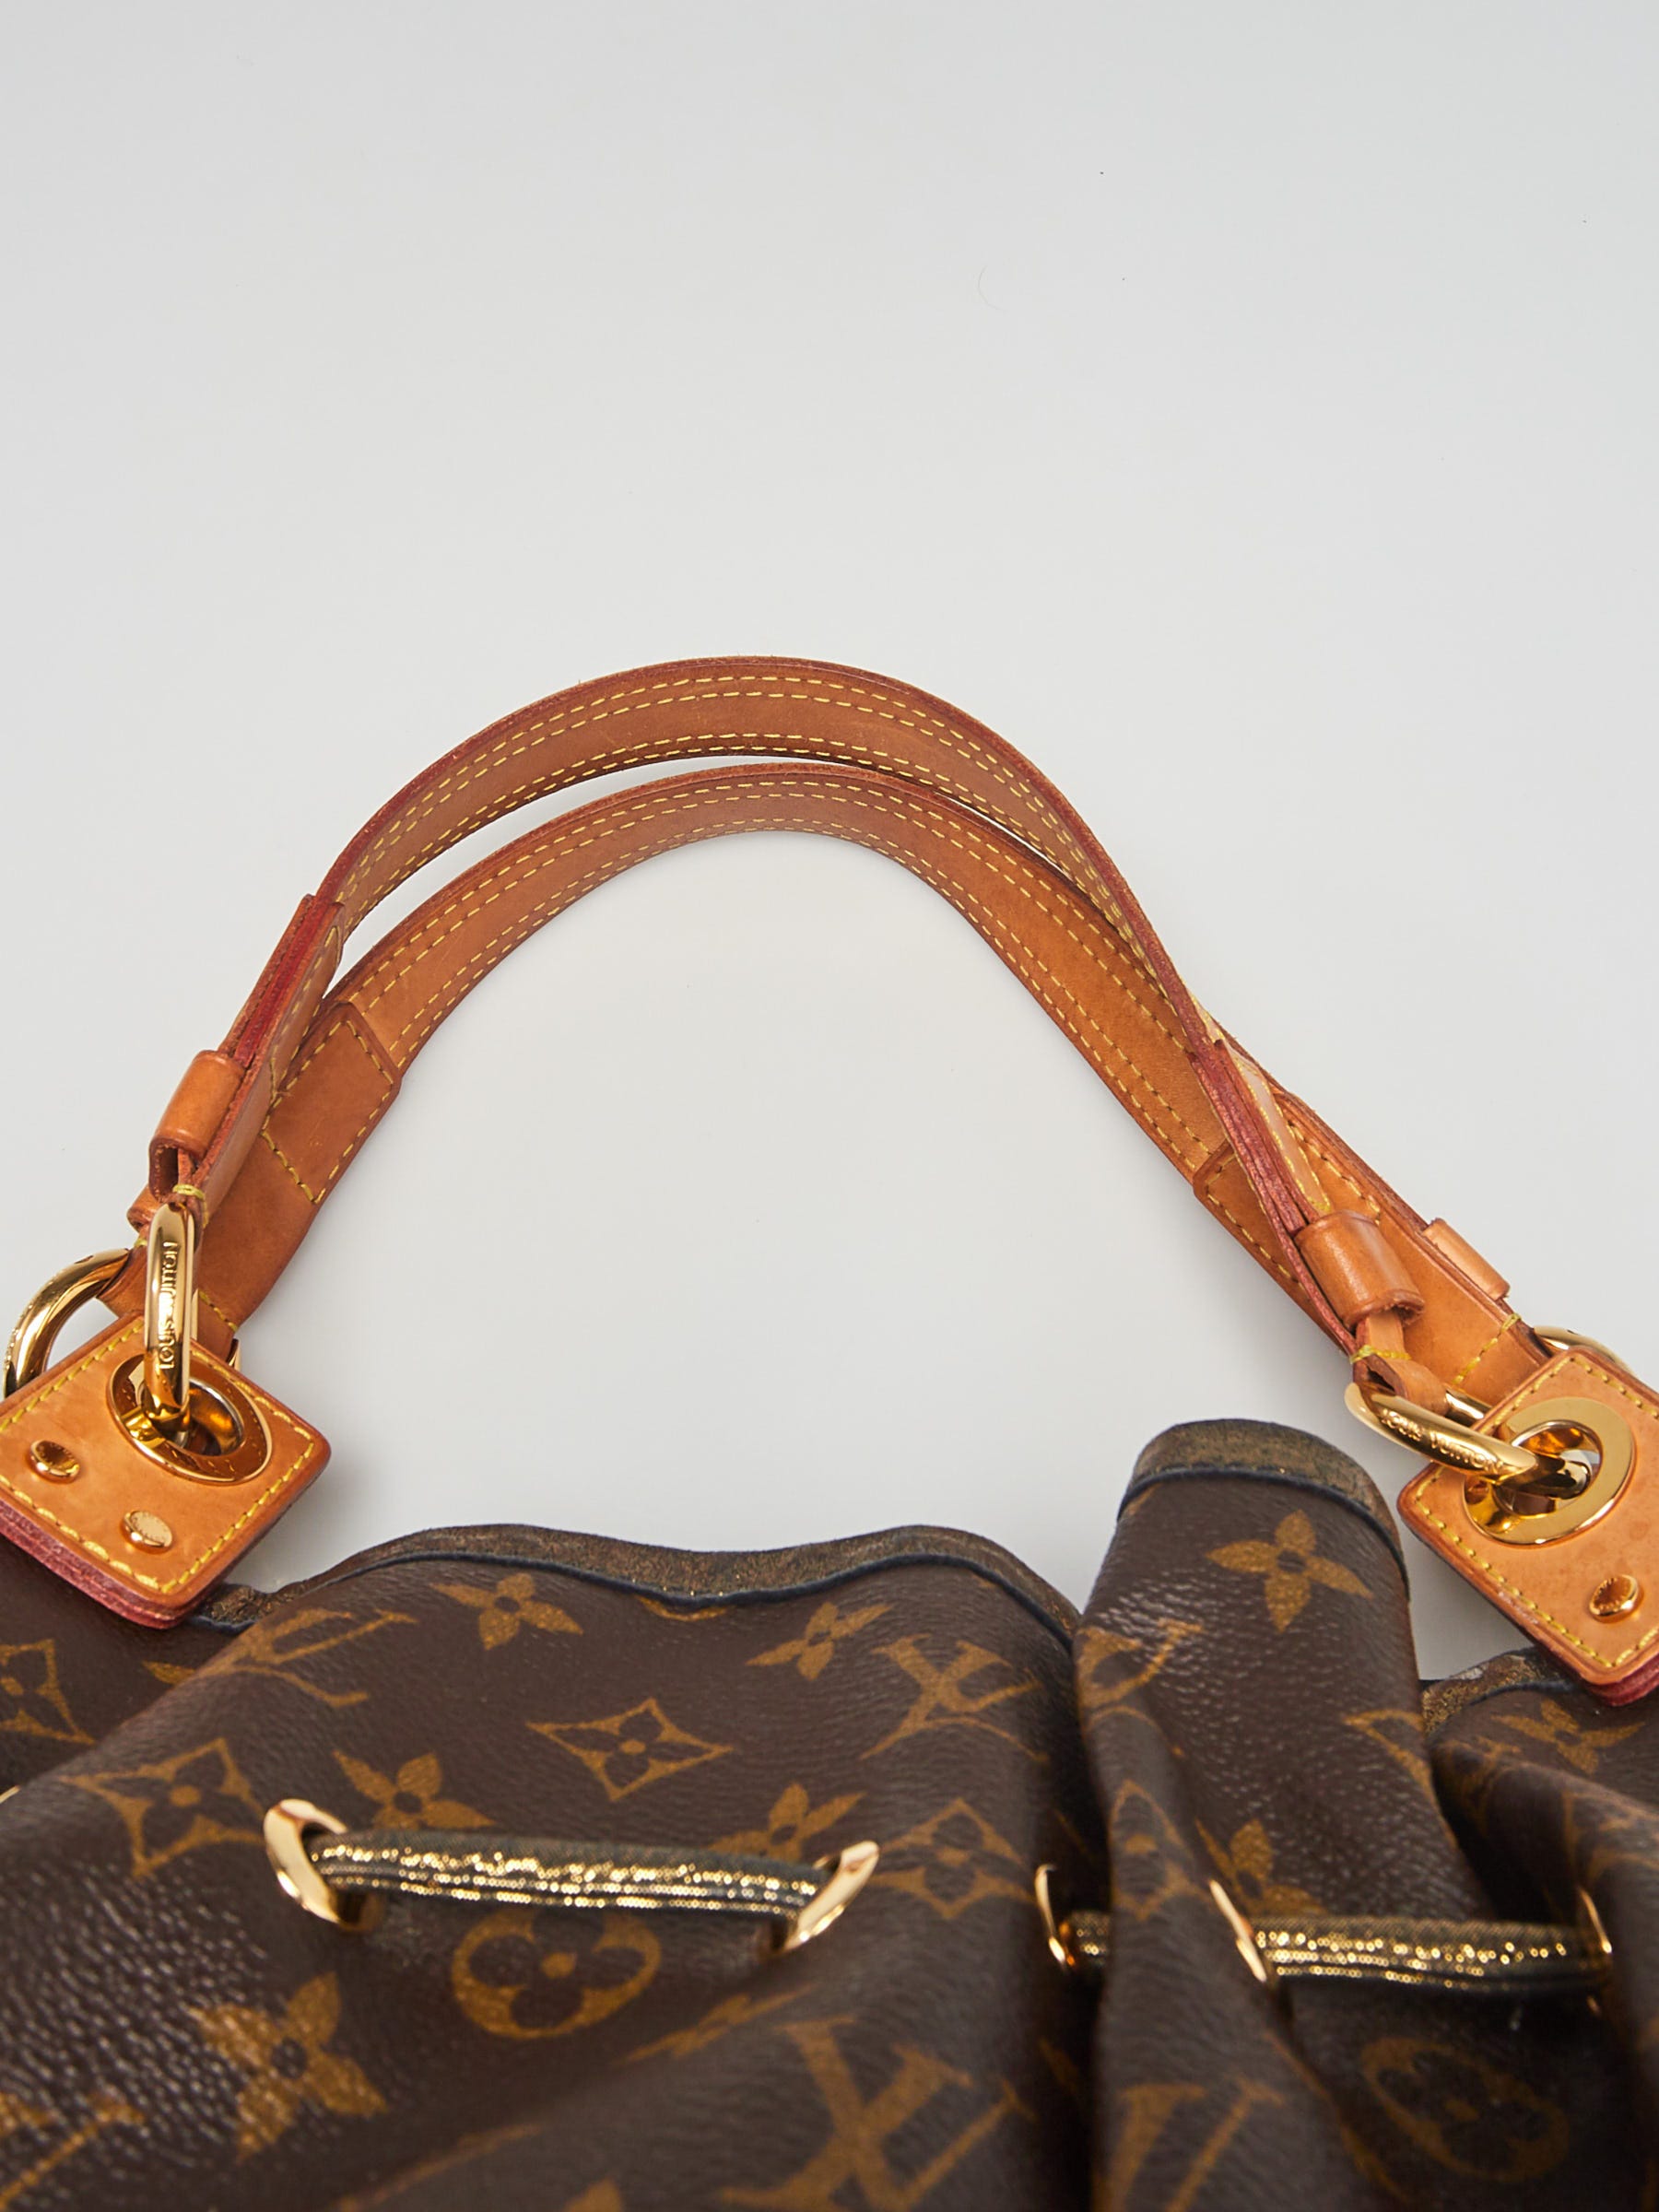 Louis Vuitton Monogram Canvas Essential V Bracelet Size 17 - Yoogi's Closet